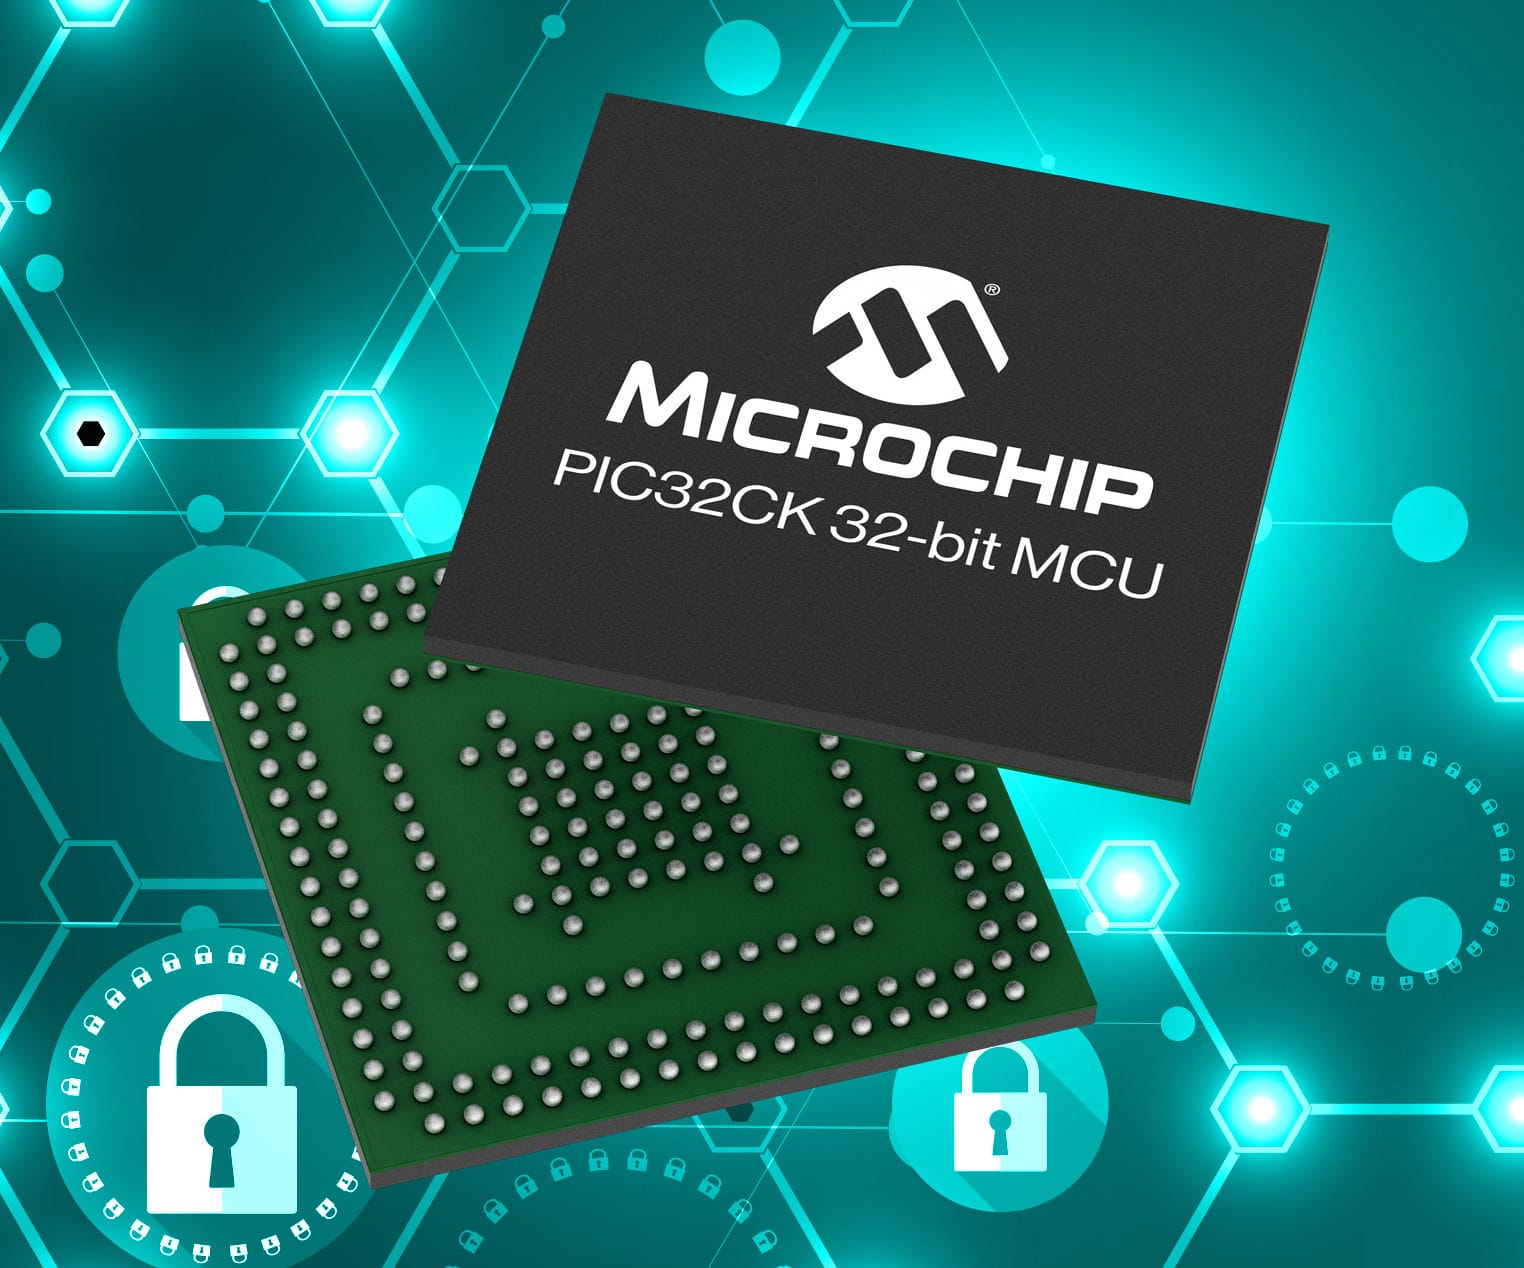 Microchip PIC32CK 32-bit MCU with HSM